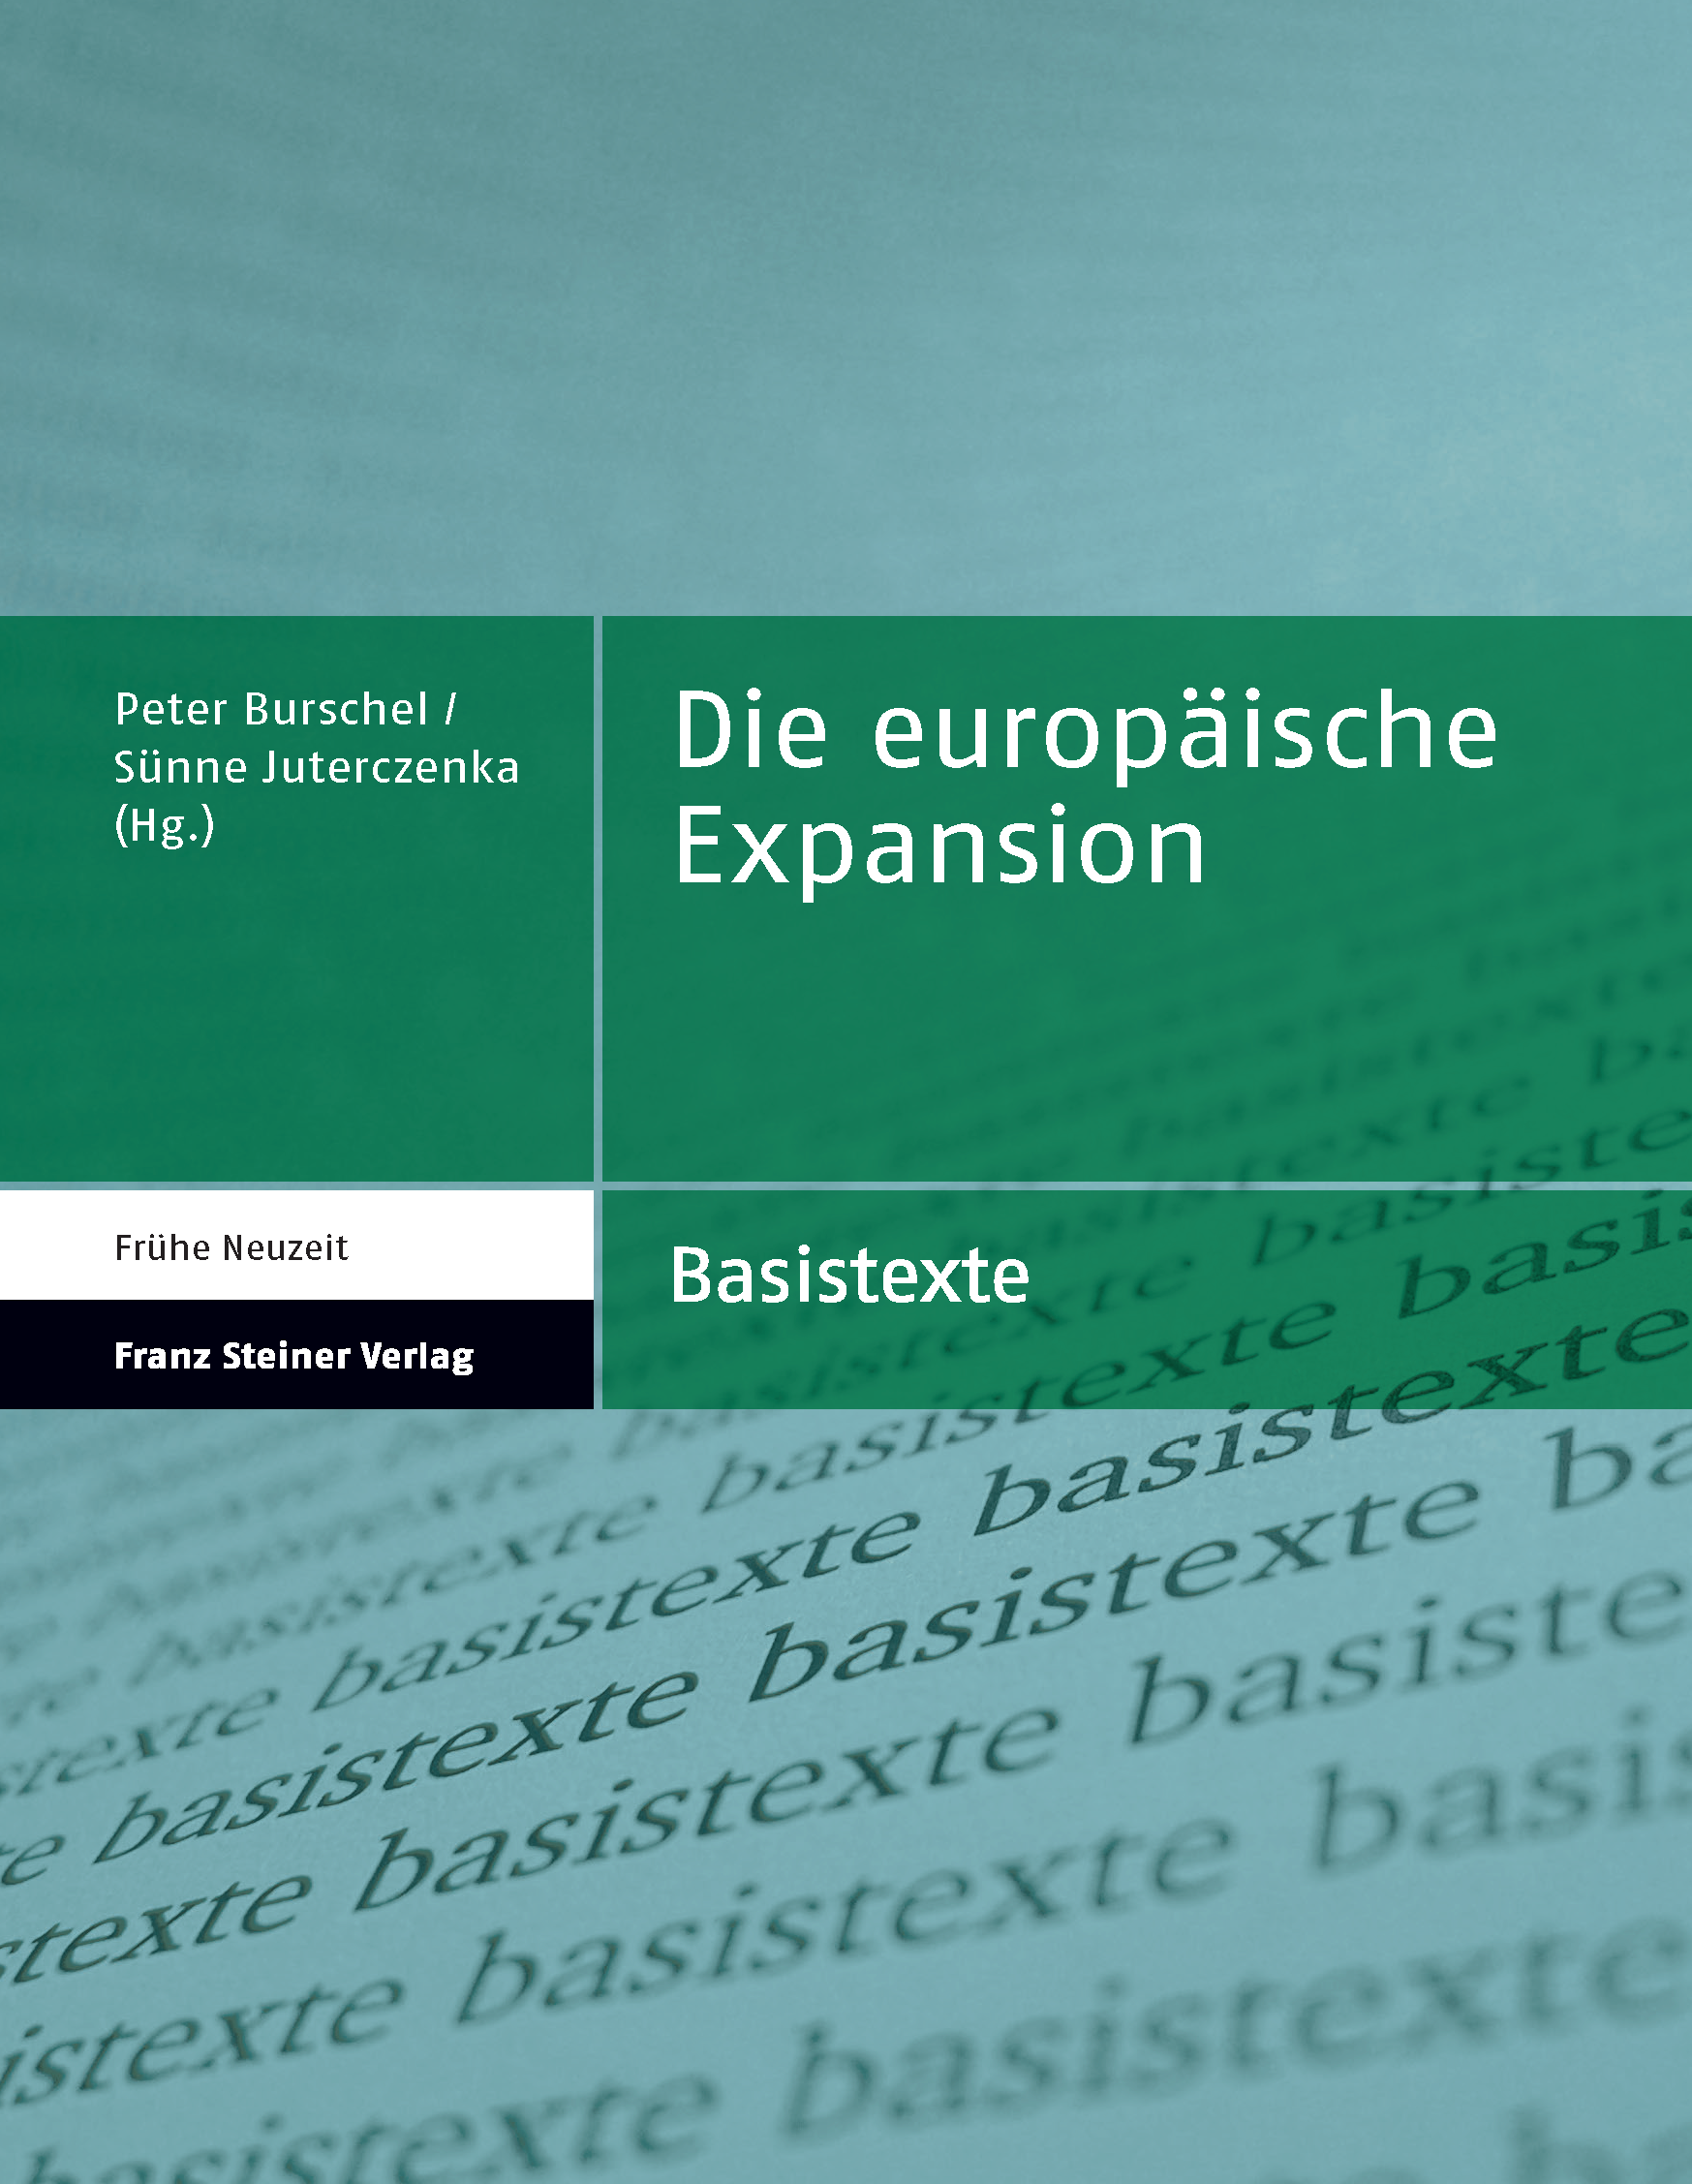 Expansion_Umschlag.png